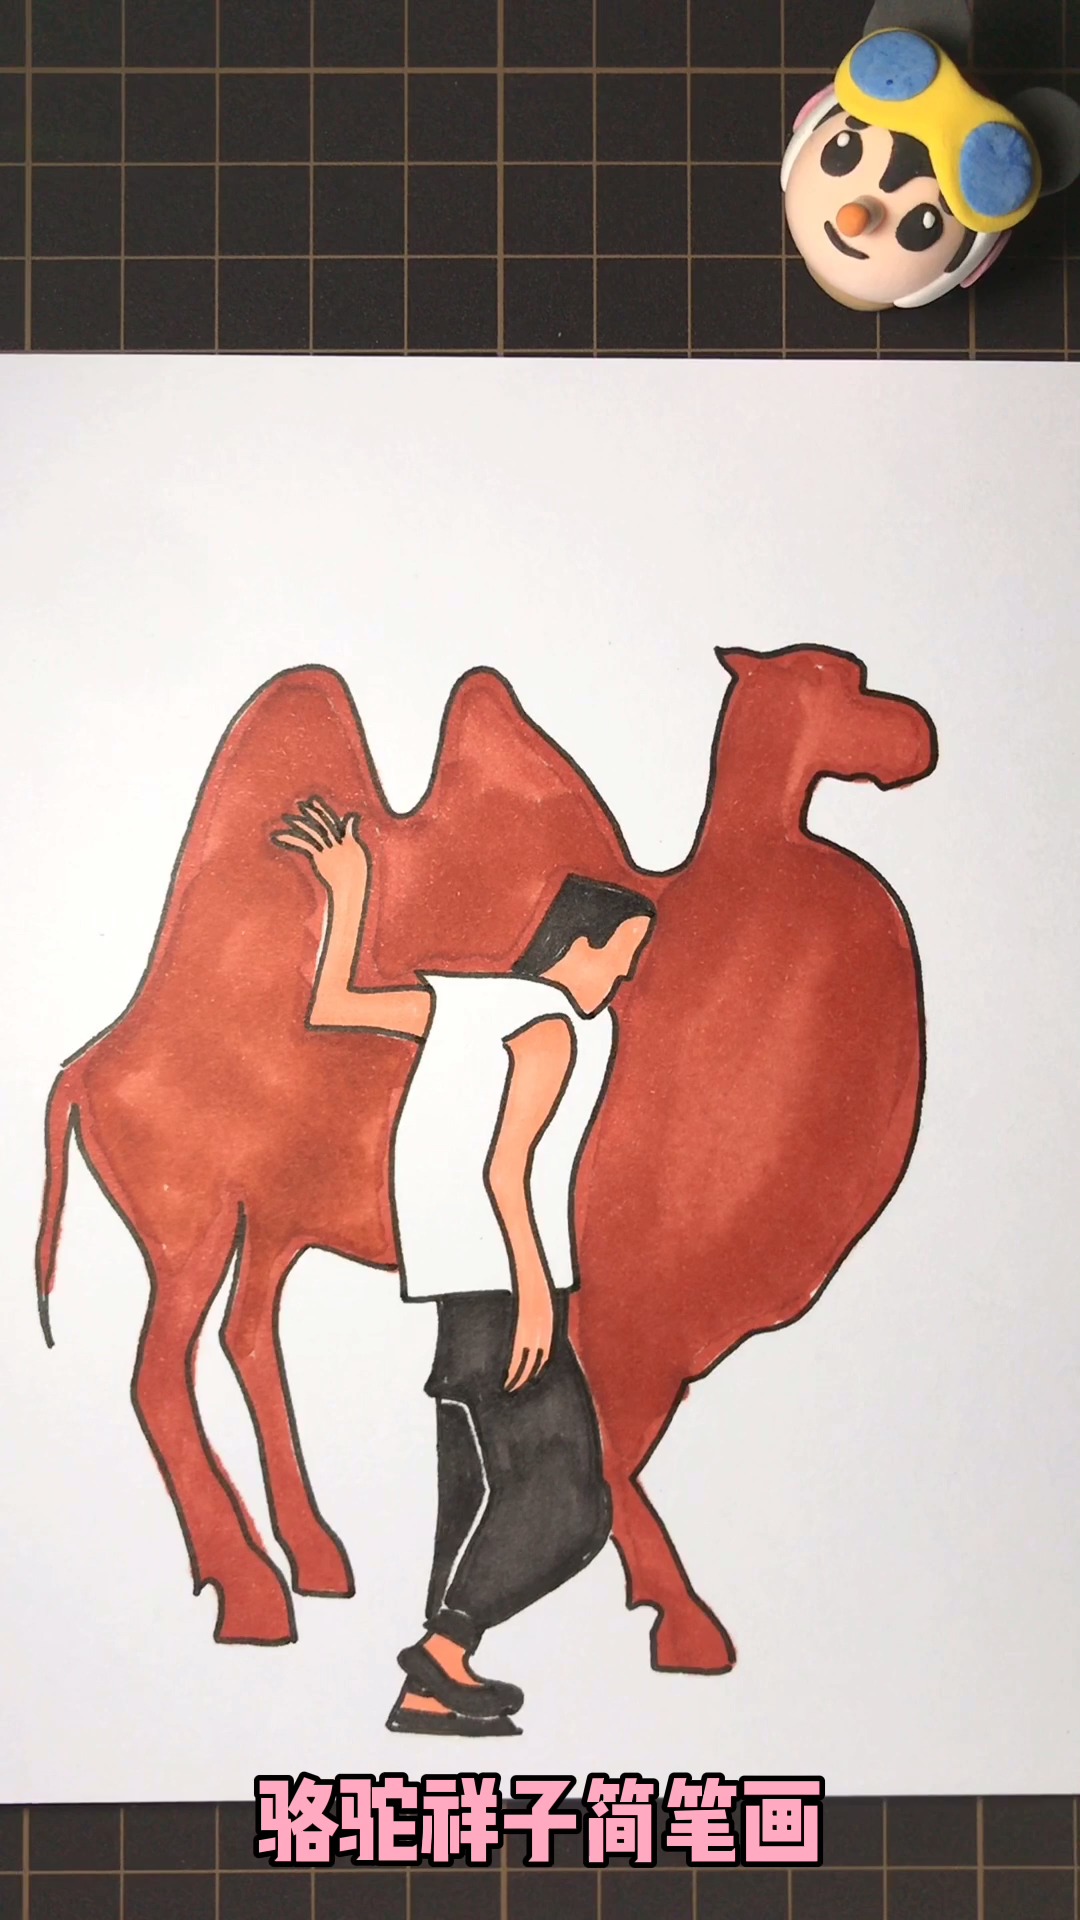 《骆驼祥子》,简笔画图片